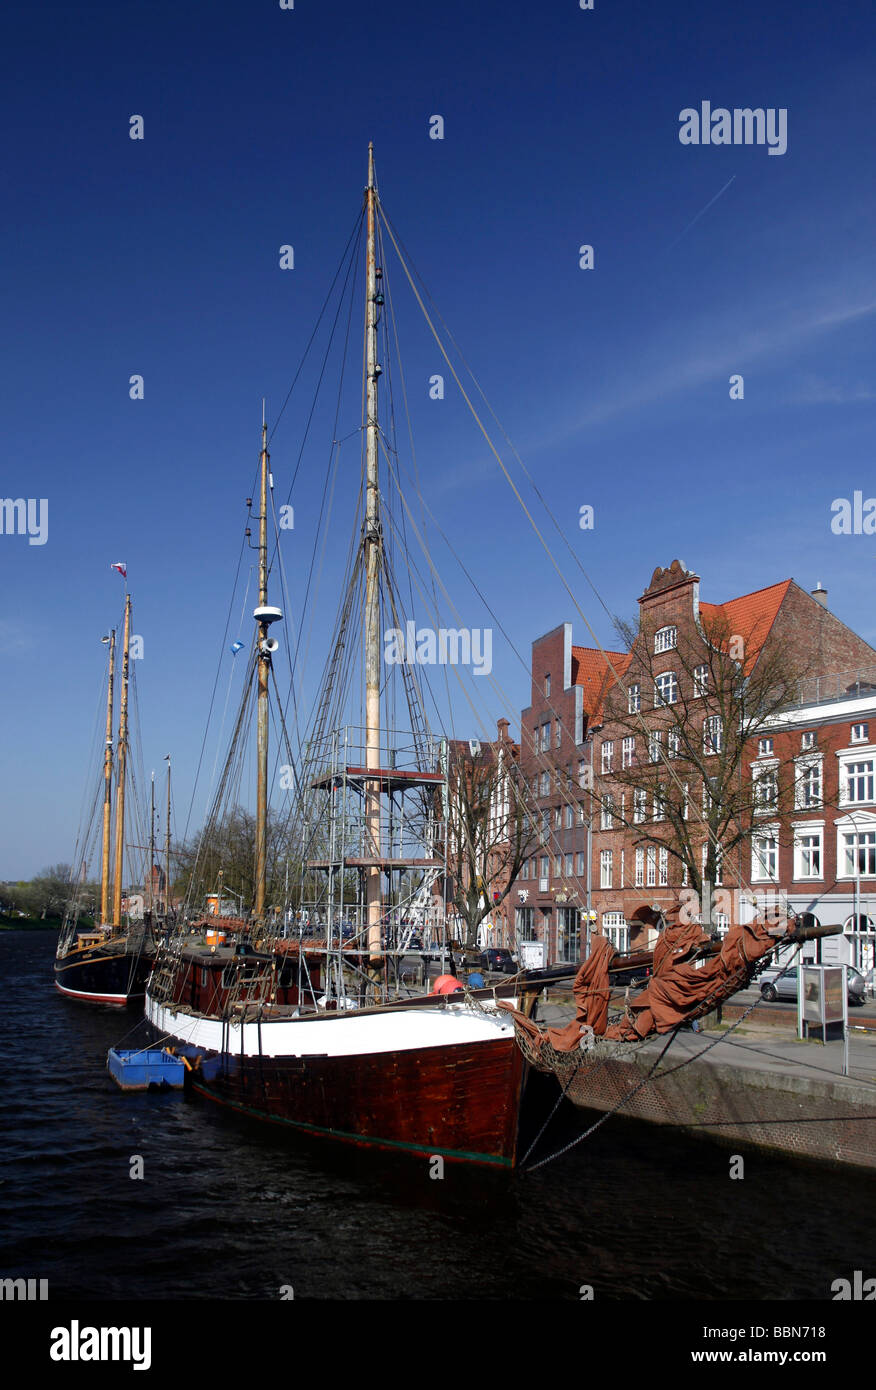 Mansiones hanseática y antiguos almacenes en el río Trave, barco museo, ciudad hanseática de Lübeck, Schleswig-Holstein, alemán Foto de stock